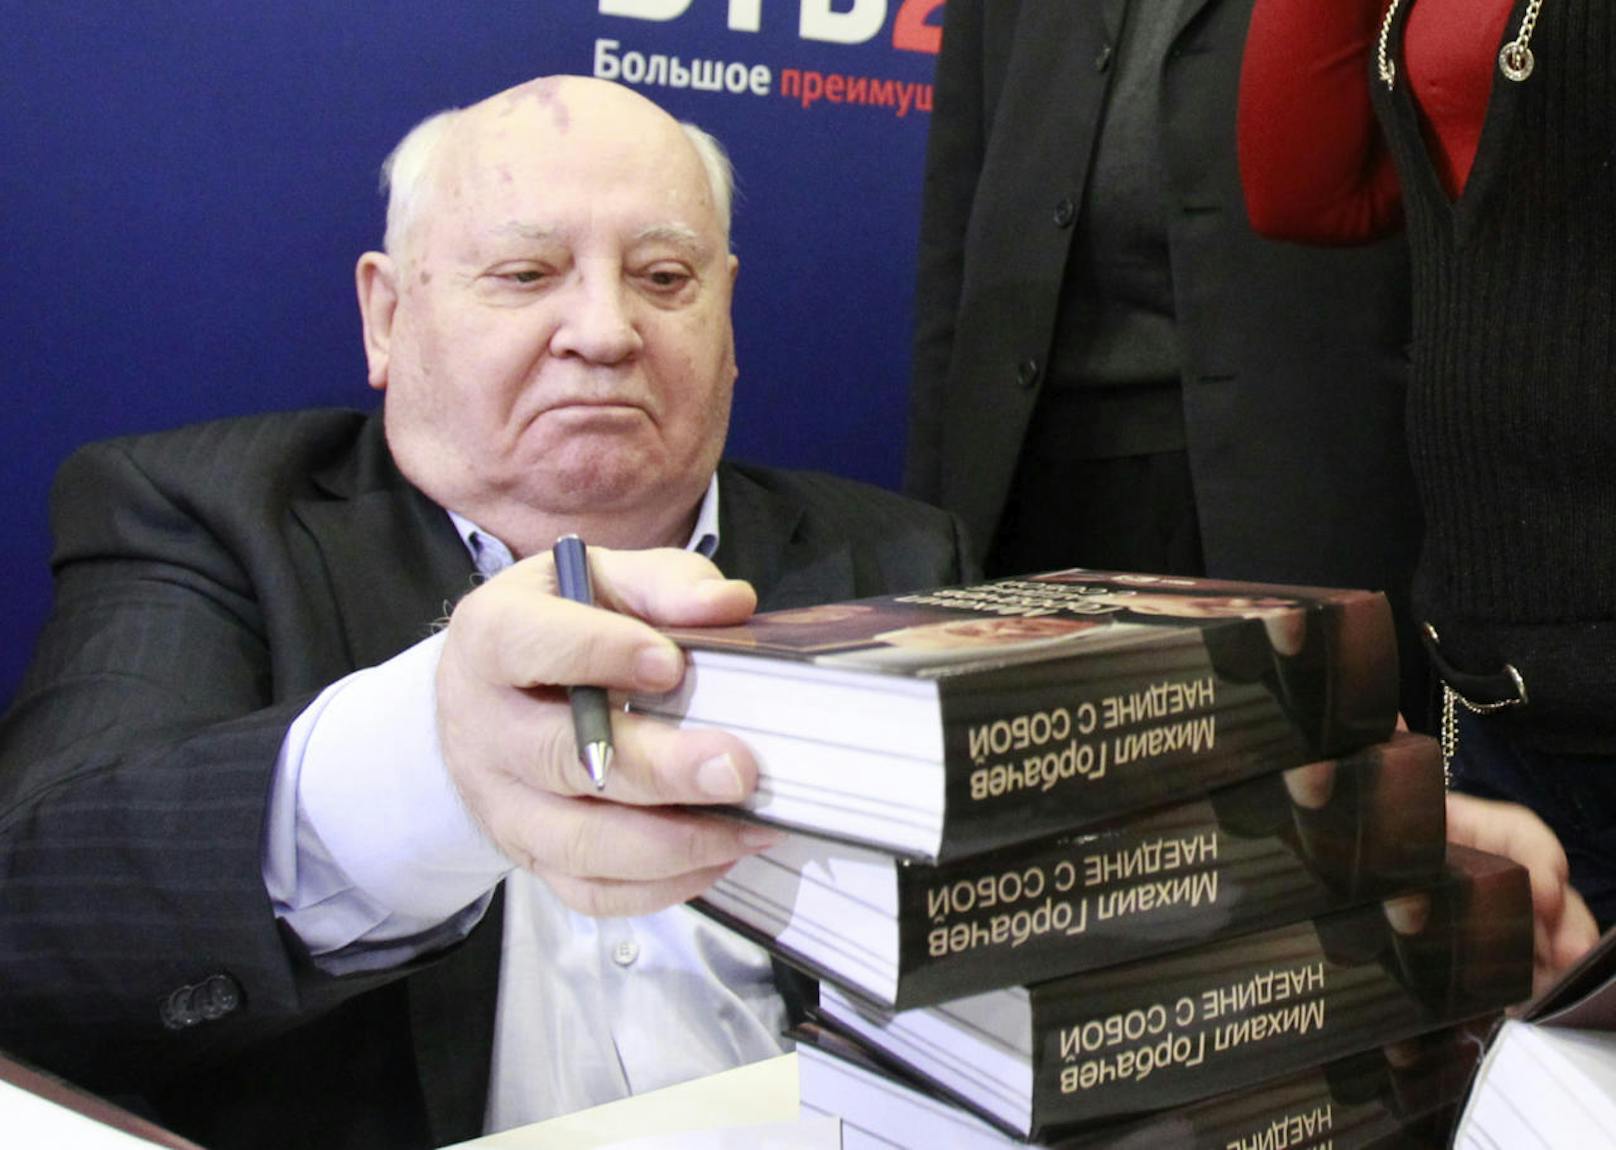 Michail Gorbatschow, März 1985 bis August 1991 Generalsekretär des Zentralkomitees der Kommunistischen Partei der Sowjetunion und von März 1990 bis Dezember 1991 Staatspräsident der Sowjetunion

Es war keine böse Absicht, dass gleich mehrere Journalisten den russischen Spitzenpolitiker mit diesem inzwischen ikonisch gewordenen Sager zitierten. Vielmehr das Werk eines übereifrigen und äußerst sprachbegabten Pressesprechers. Wirklich gesagt hat Gorbatschow: "Gefahren lauern nur auf jene, die nicht auf das Leben reagieren."